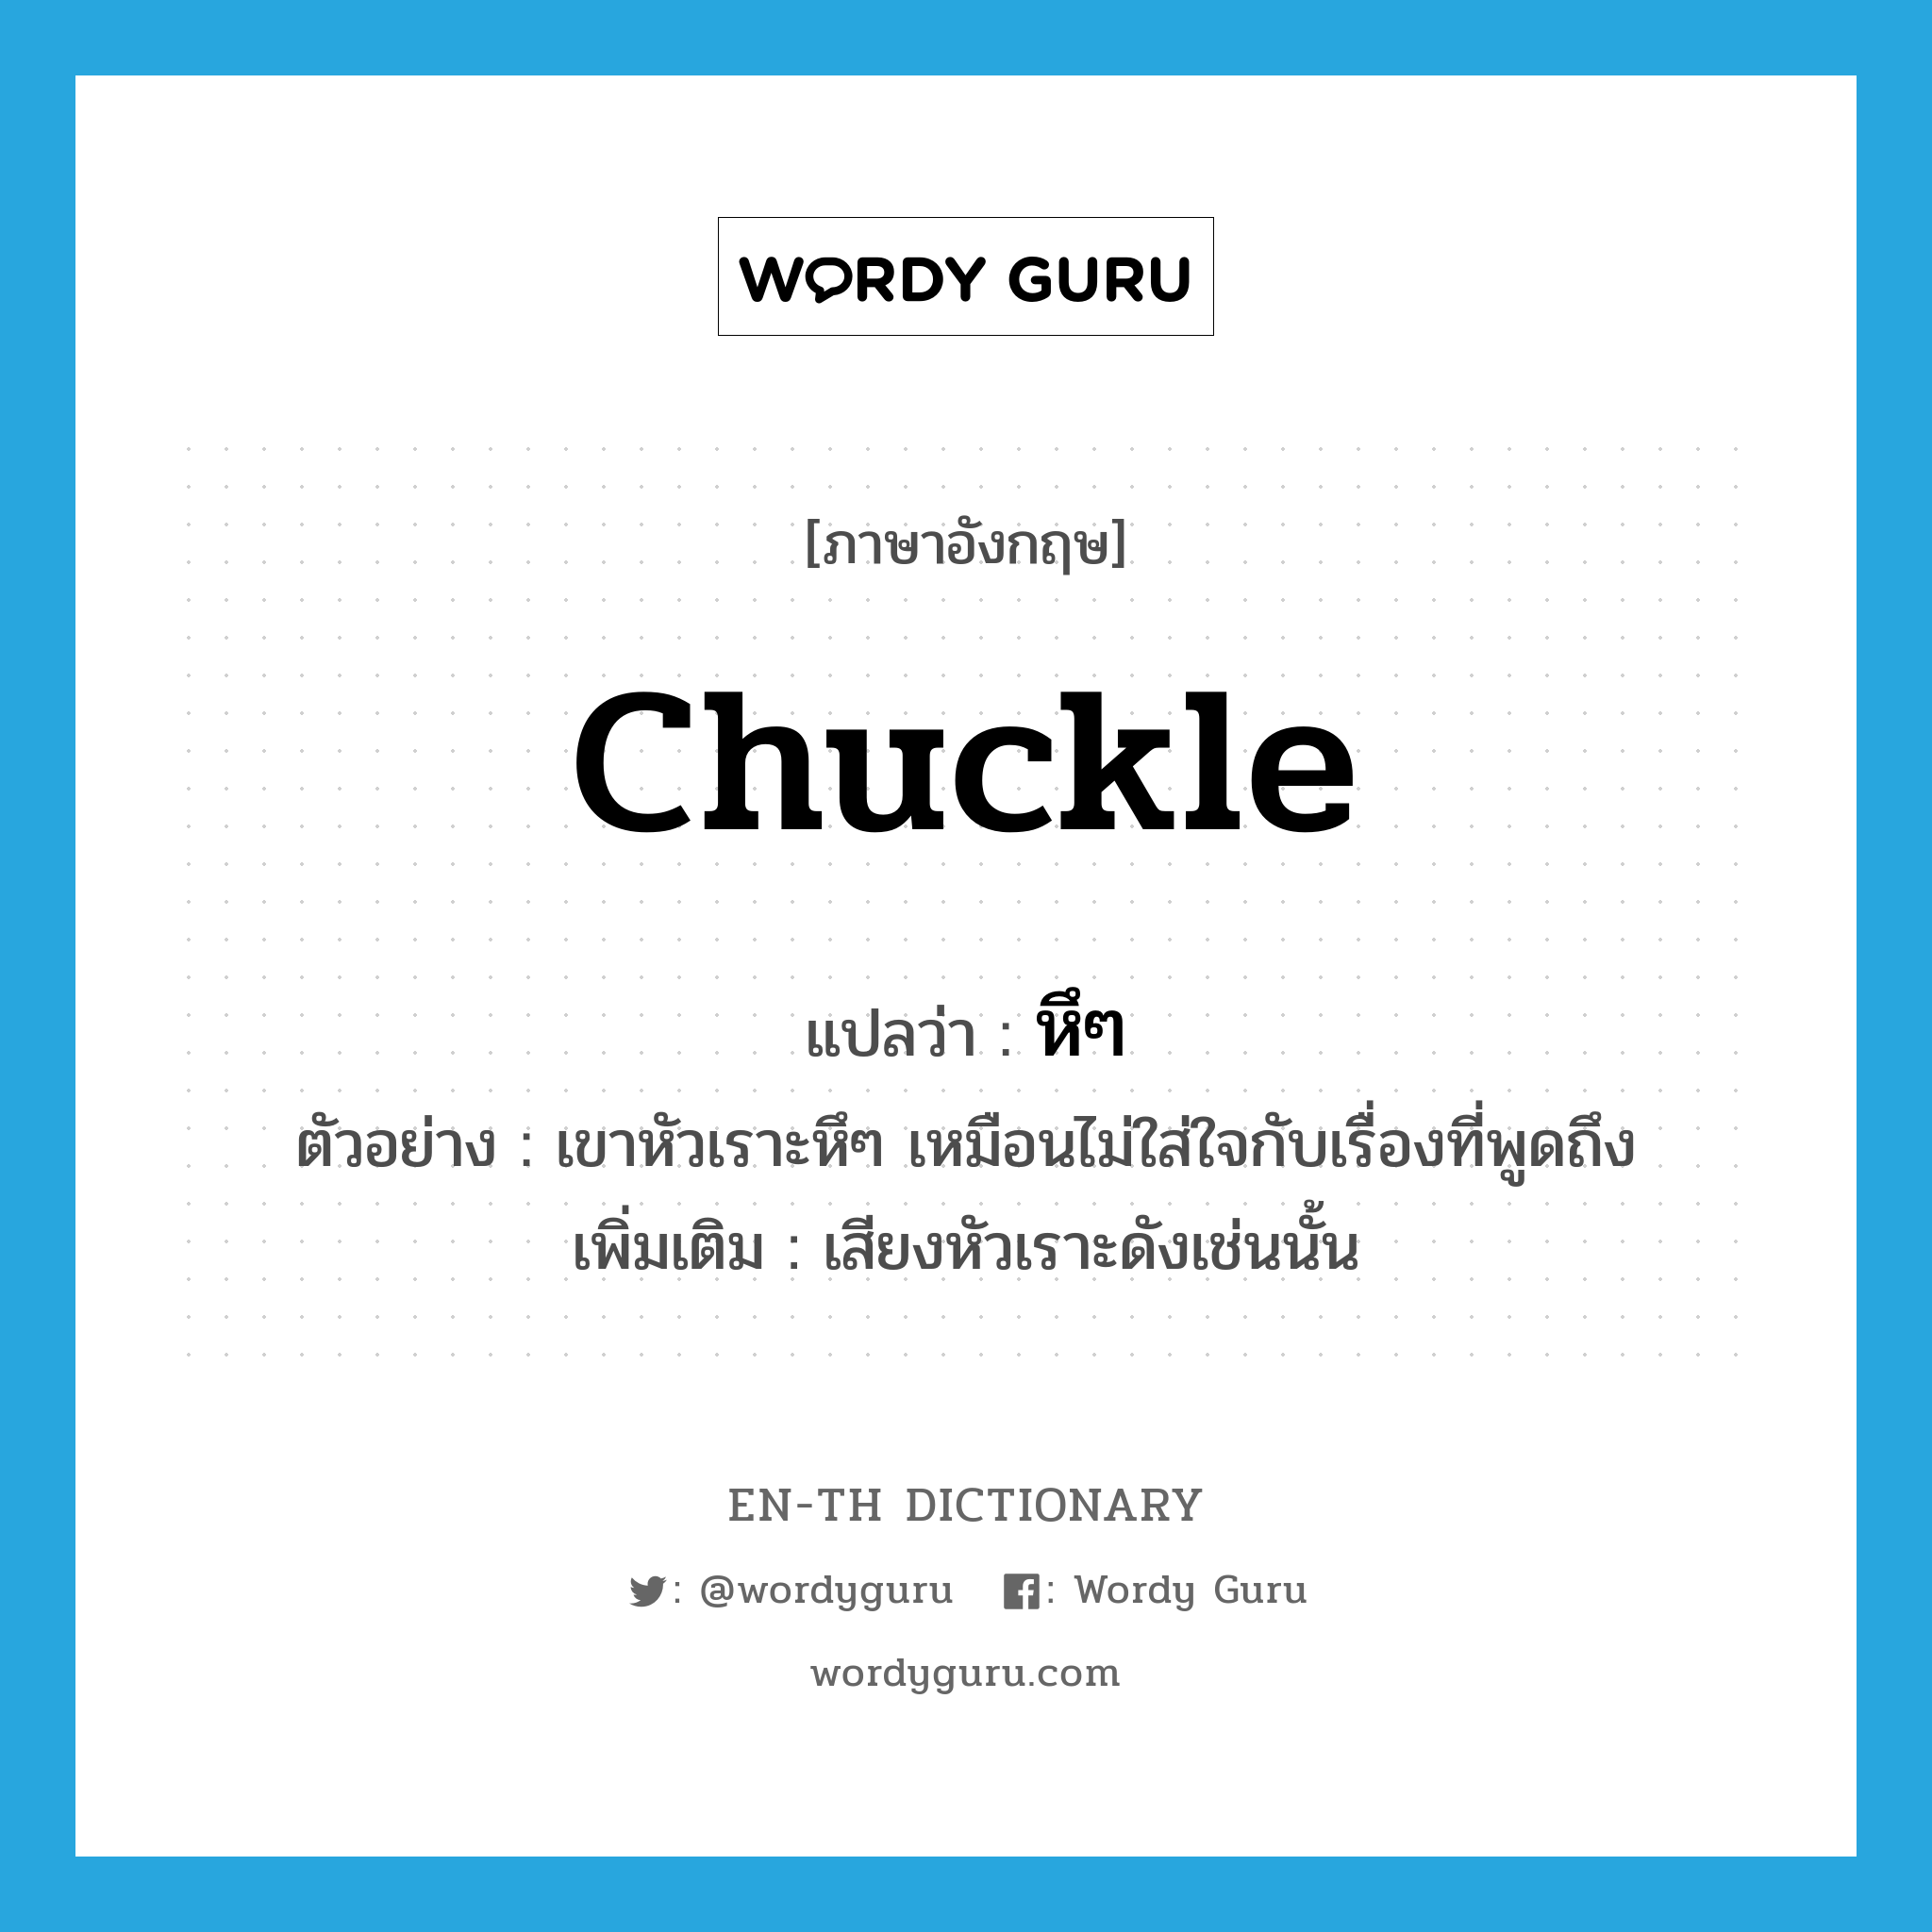 chuckle แปลว่า?, คำศัพท์ภาษาอังกฤษ chuckle แปลว่า หึๆ ประเภท ADV ตัวอย่าง เขาหัวเราะหึๆ เหมือนไม่ใส่ใจกับเรื่องที่พูดถึง เพิ่มเติม เสียงหัวเราะดังเช่นนั้น หมวด ADV